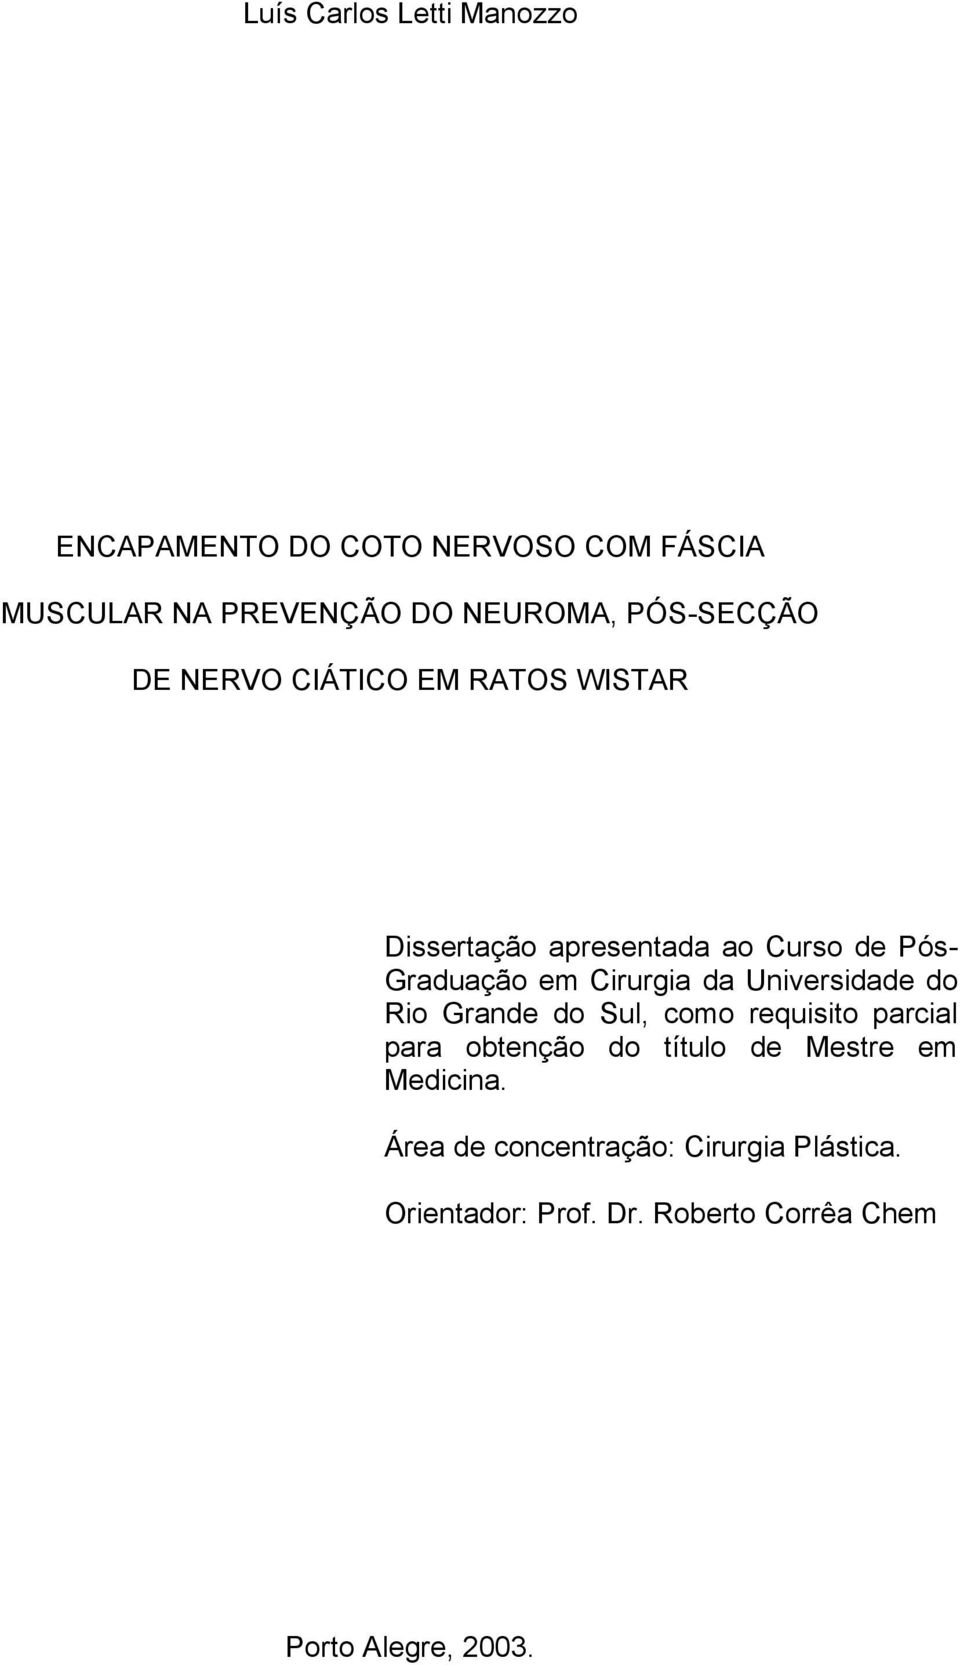 Cirurgia da Universidade do Rio Grande do Sul, como requisito parcial para obtenção do título de Mestre